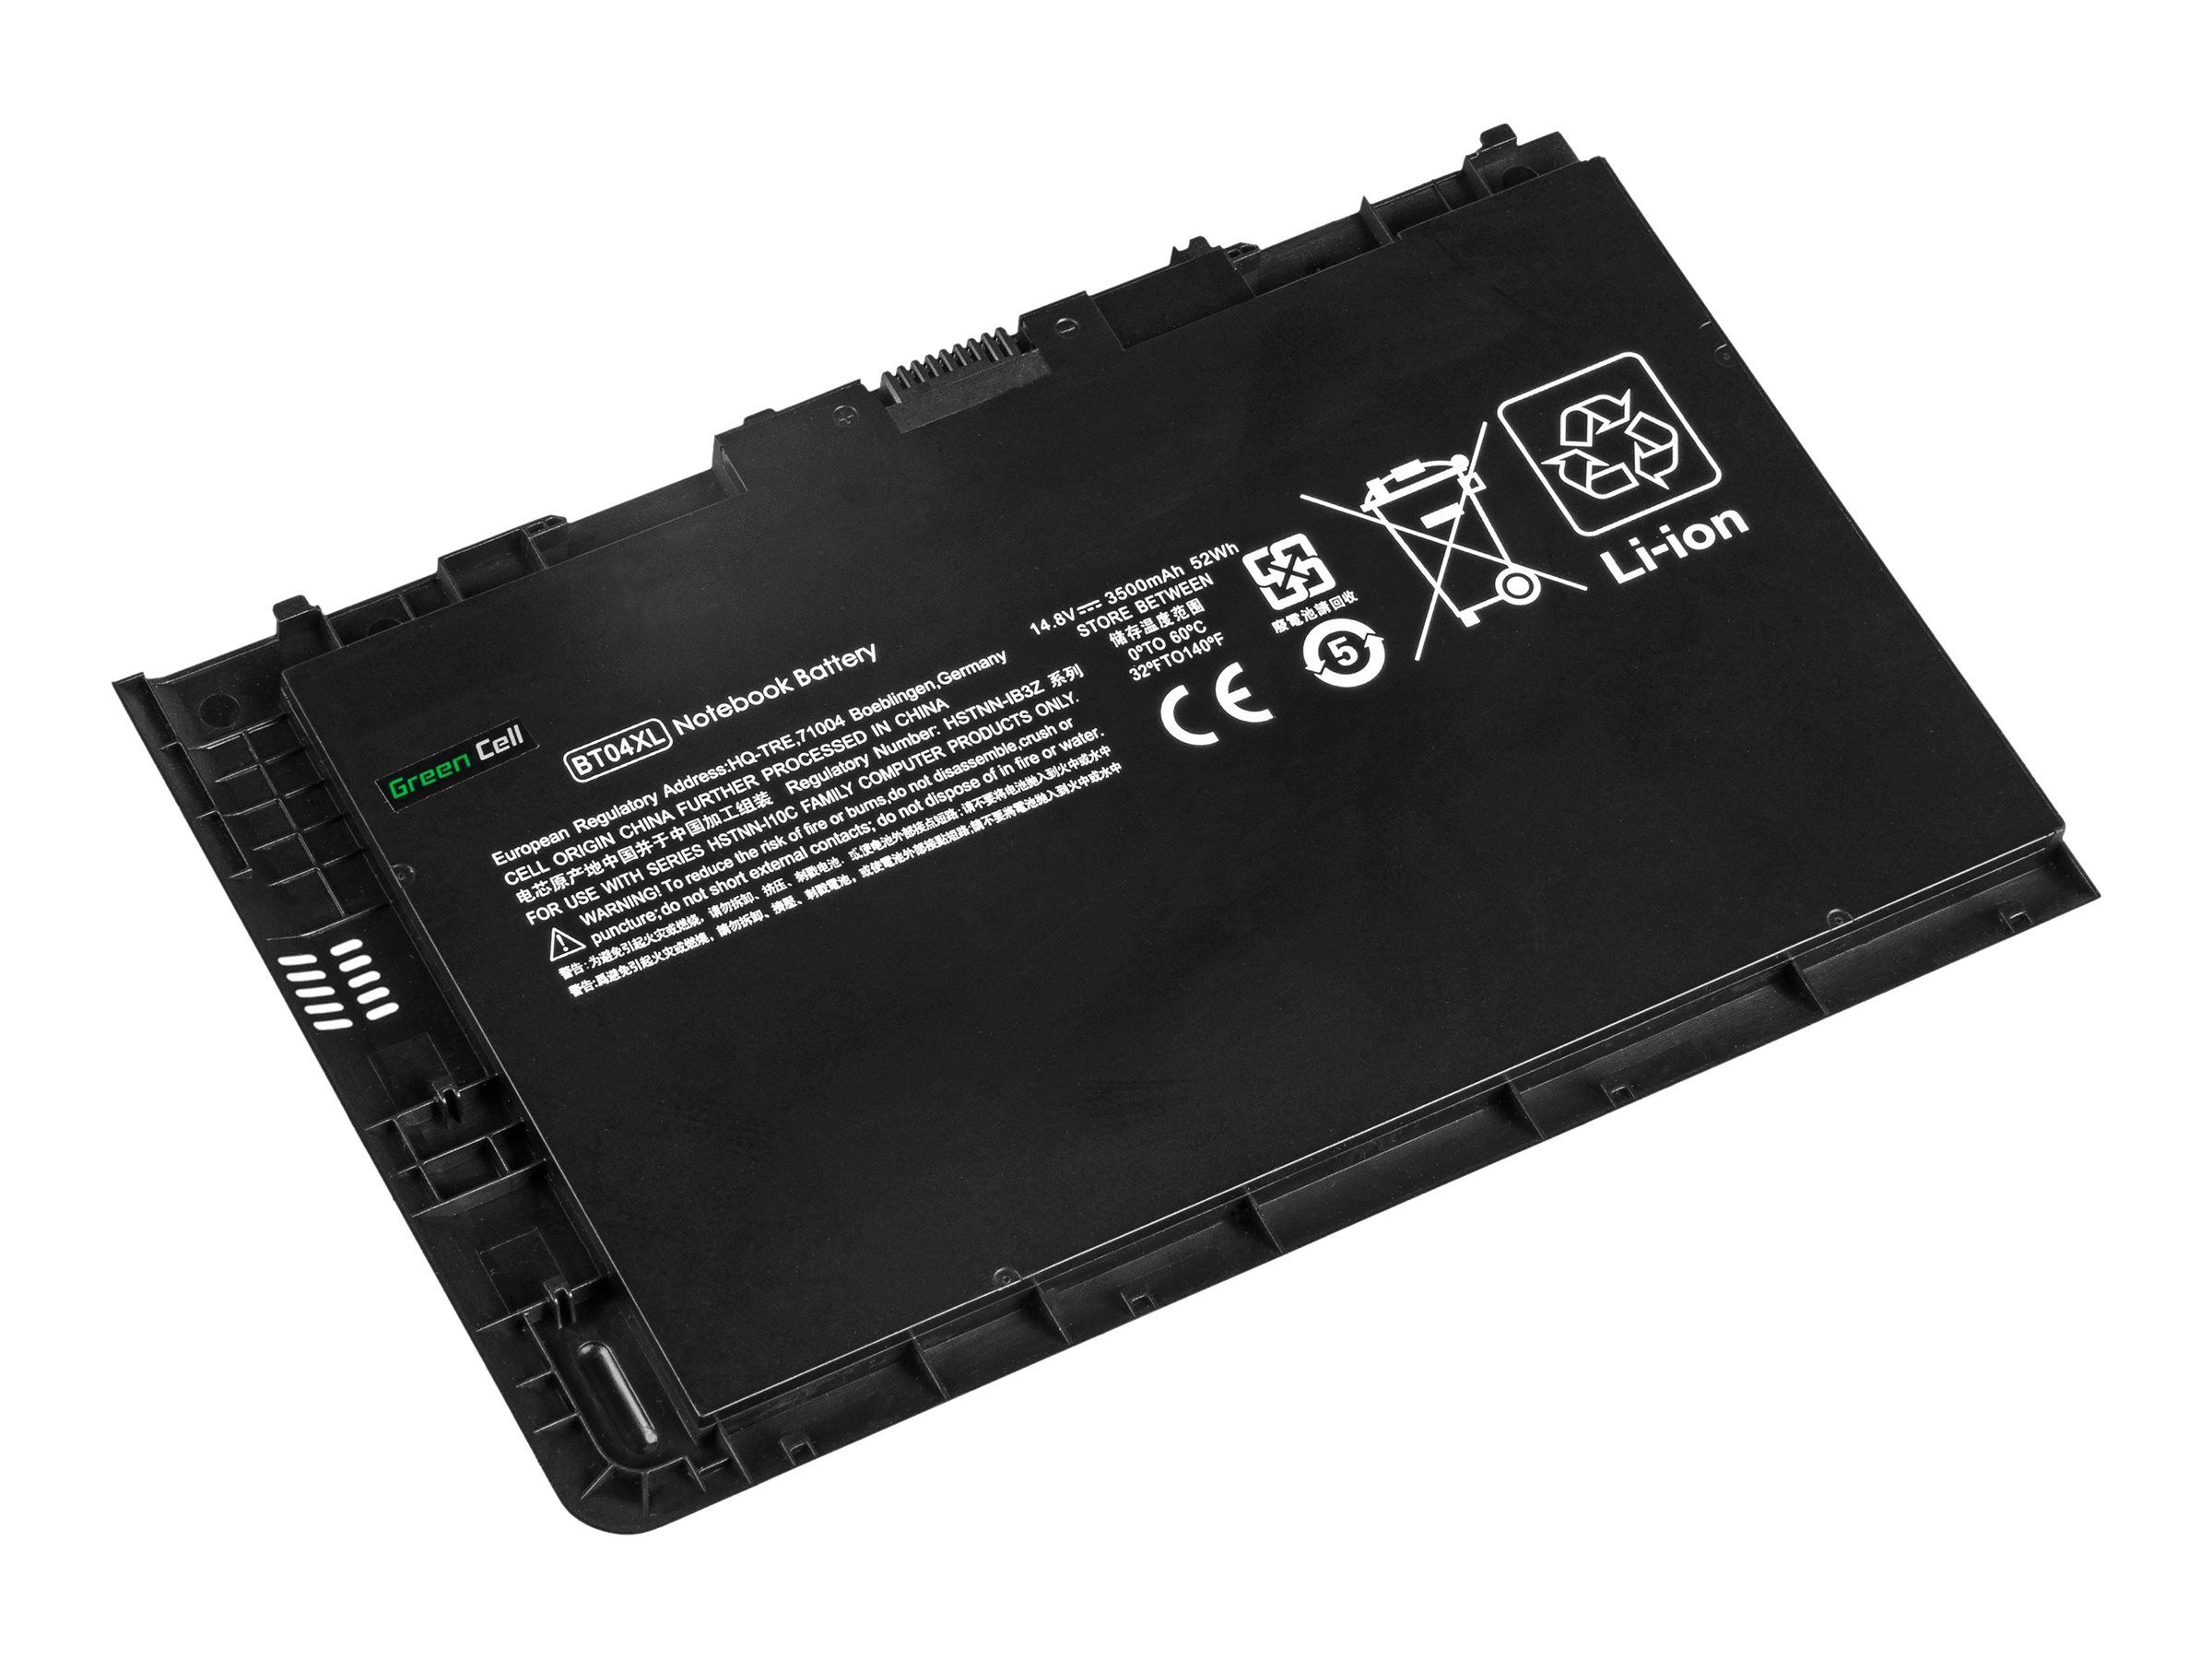 Green Cell Laptop-Batterie (gleichwertig mit: HP BT04XL, HP BA06XL)